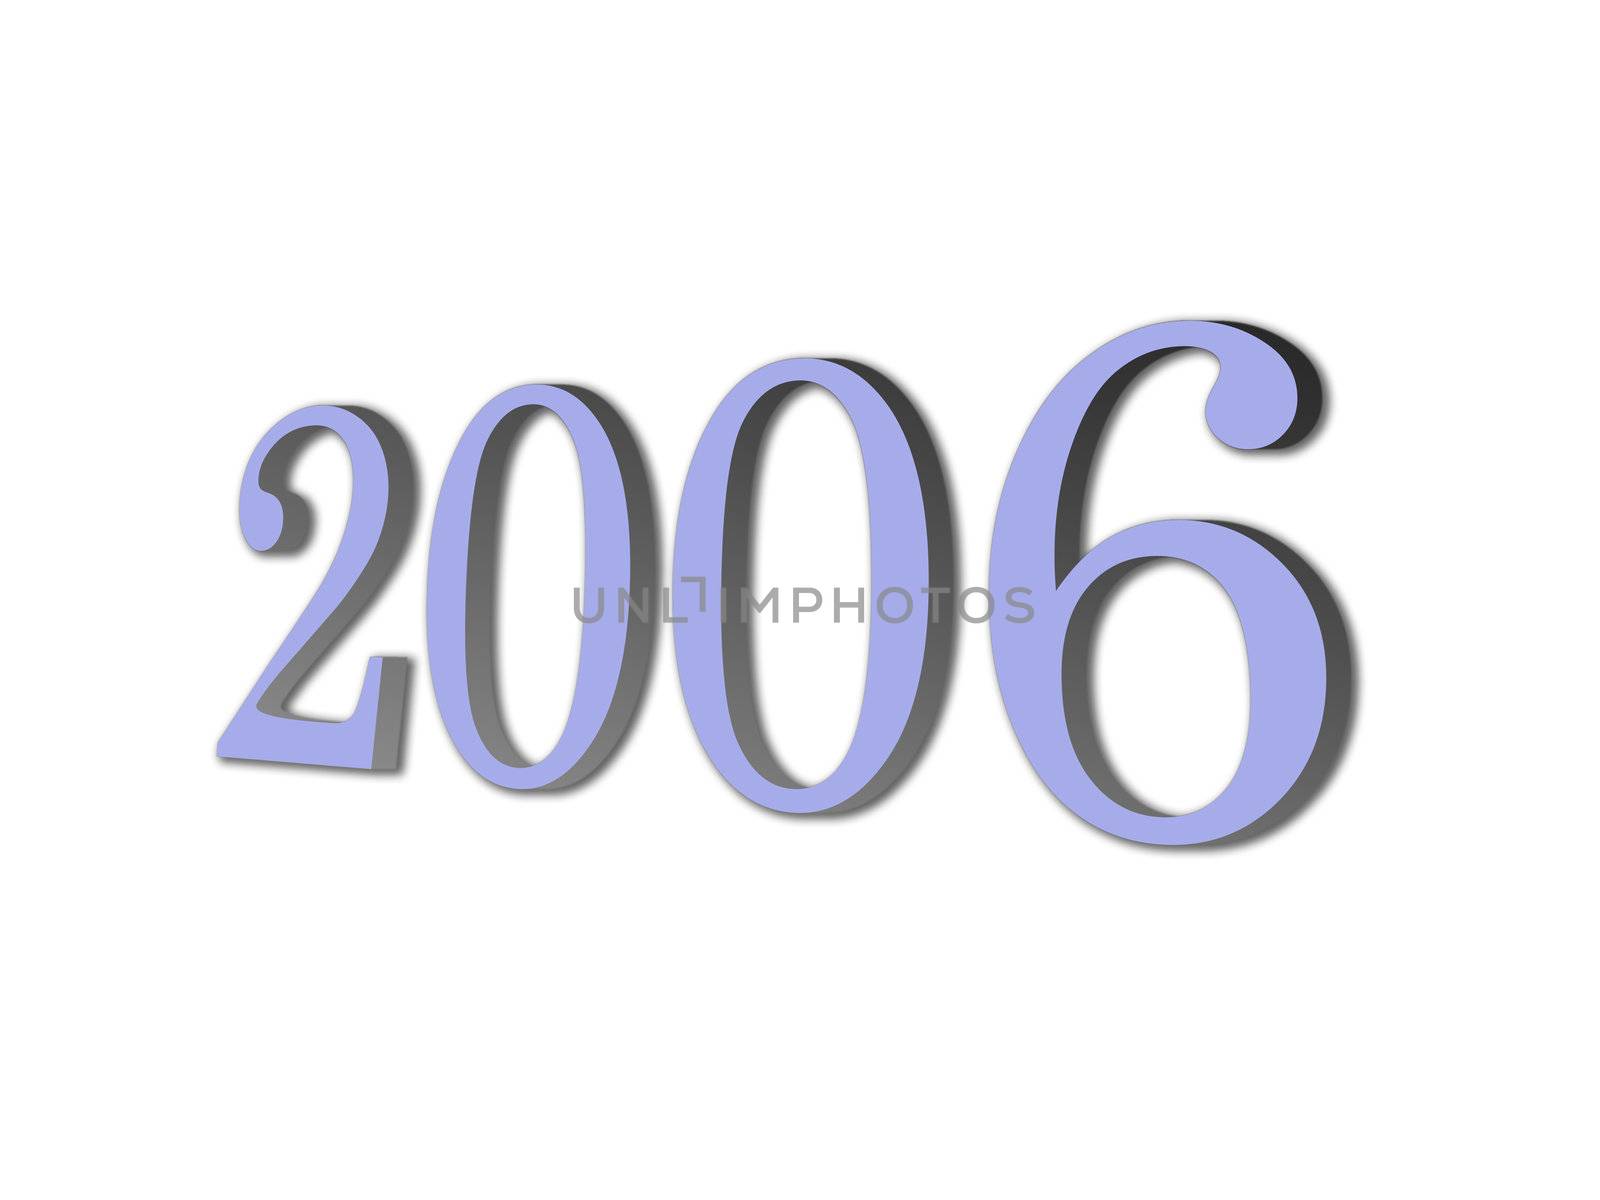 brand new year 2006 